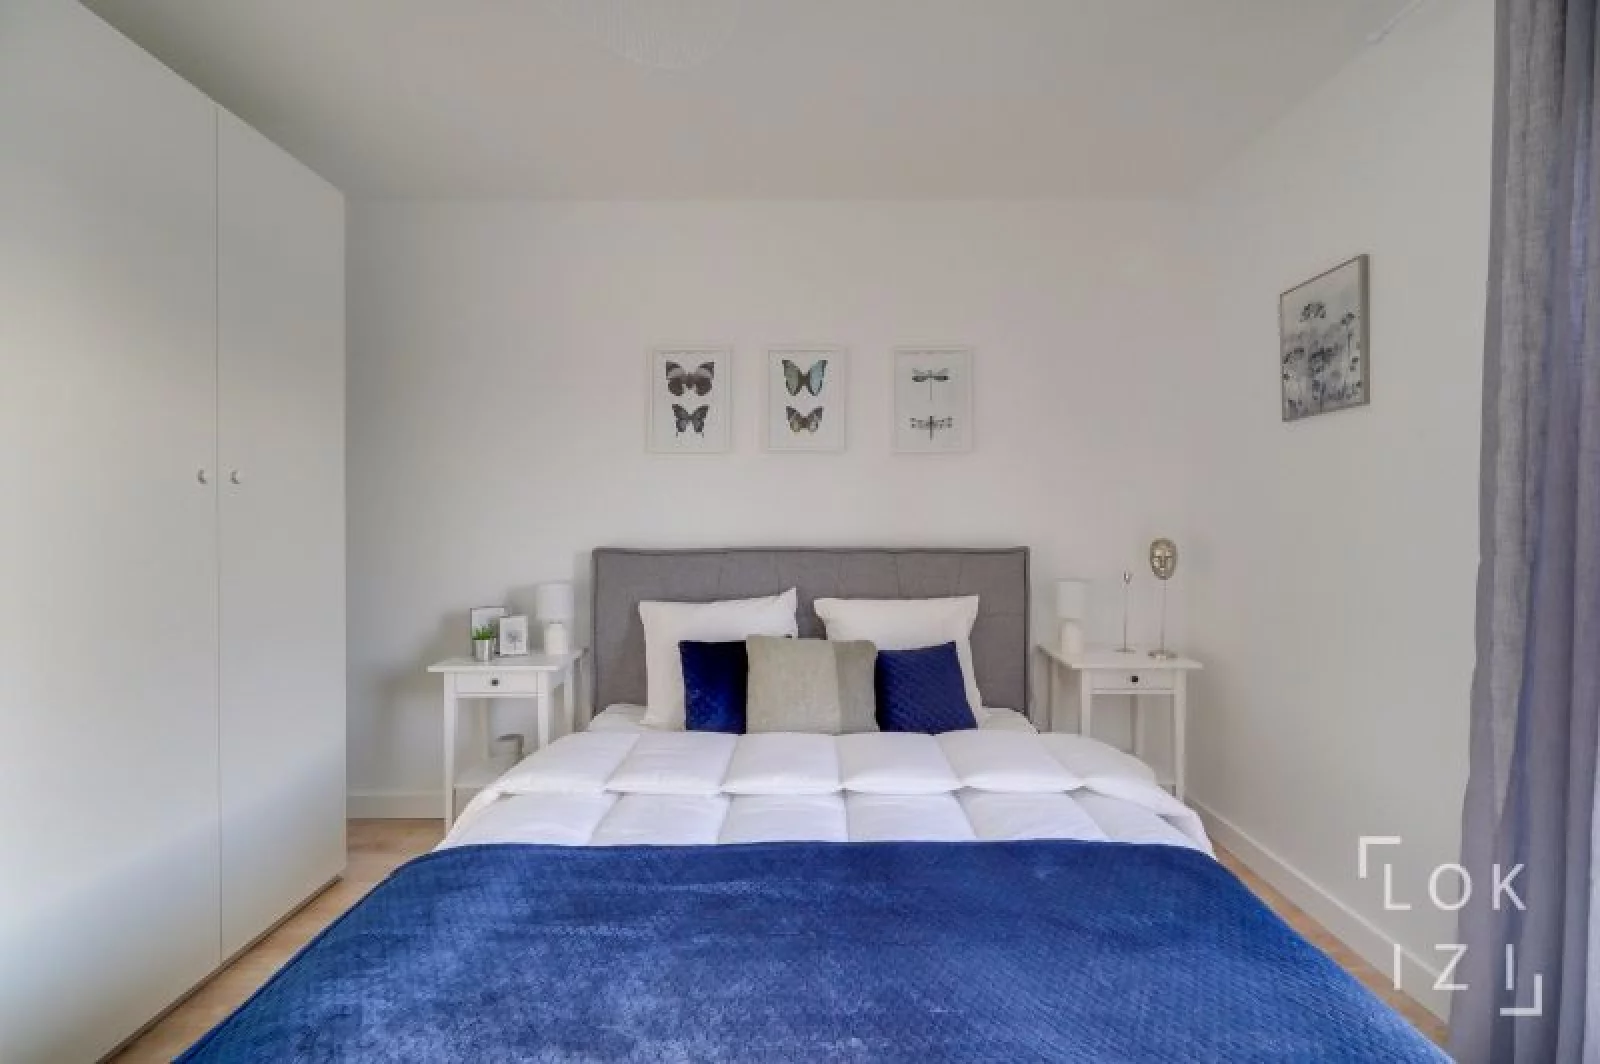 Location appartement meublé 3 pièces 65 m² (Bordeaux - Talence)